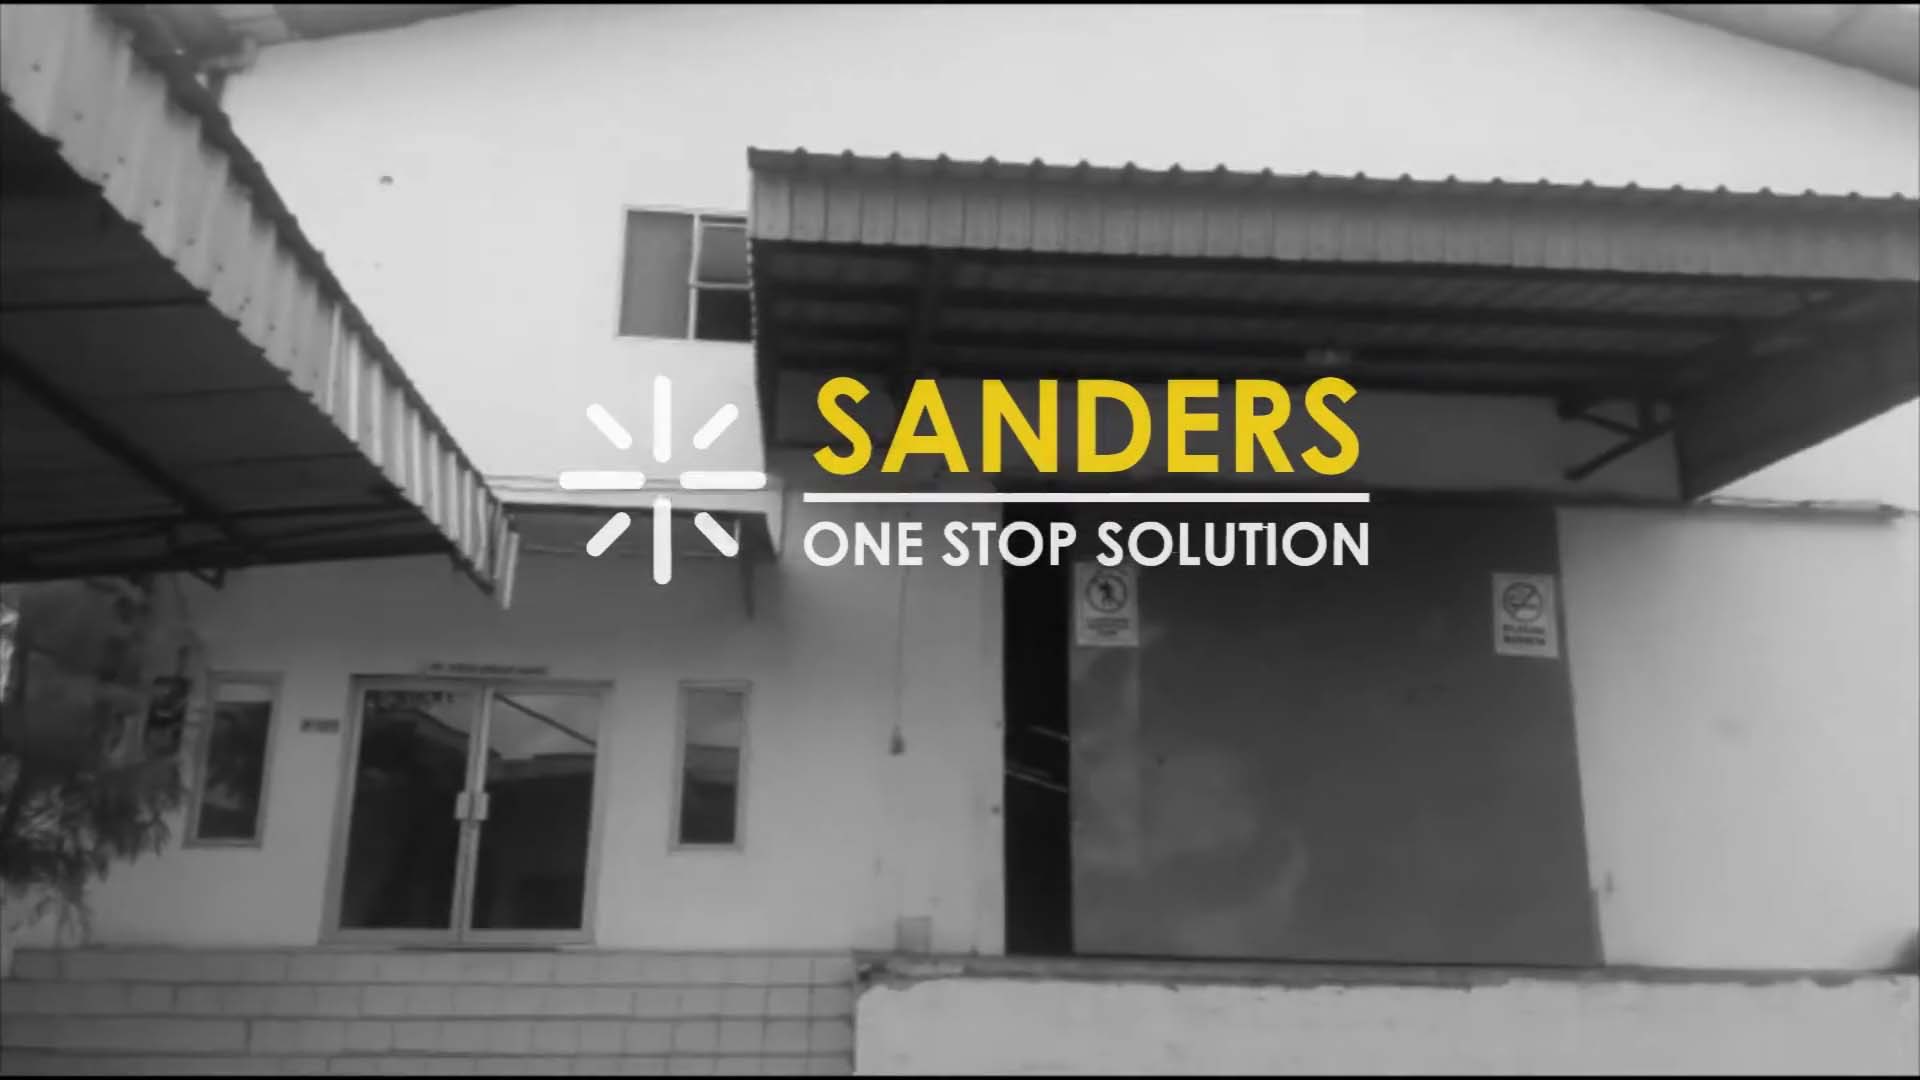 Sosialisasi Sanders di Jambi